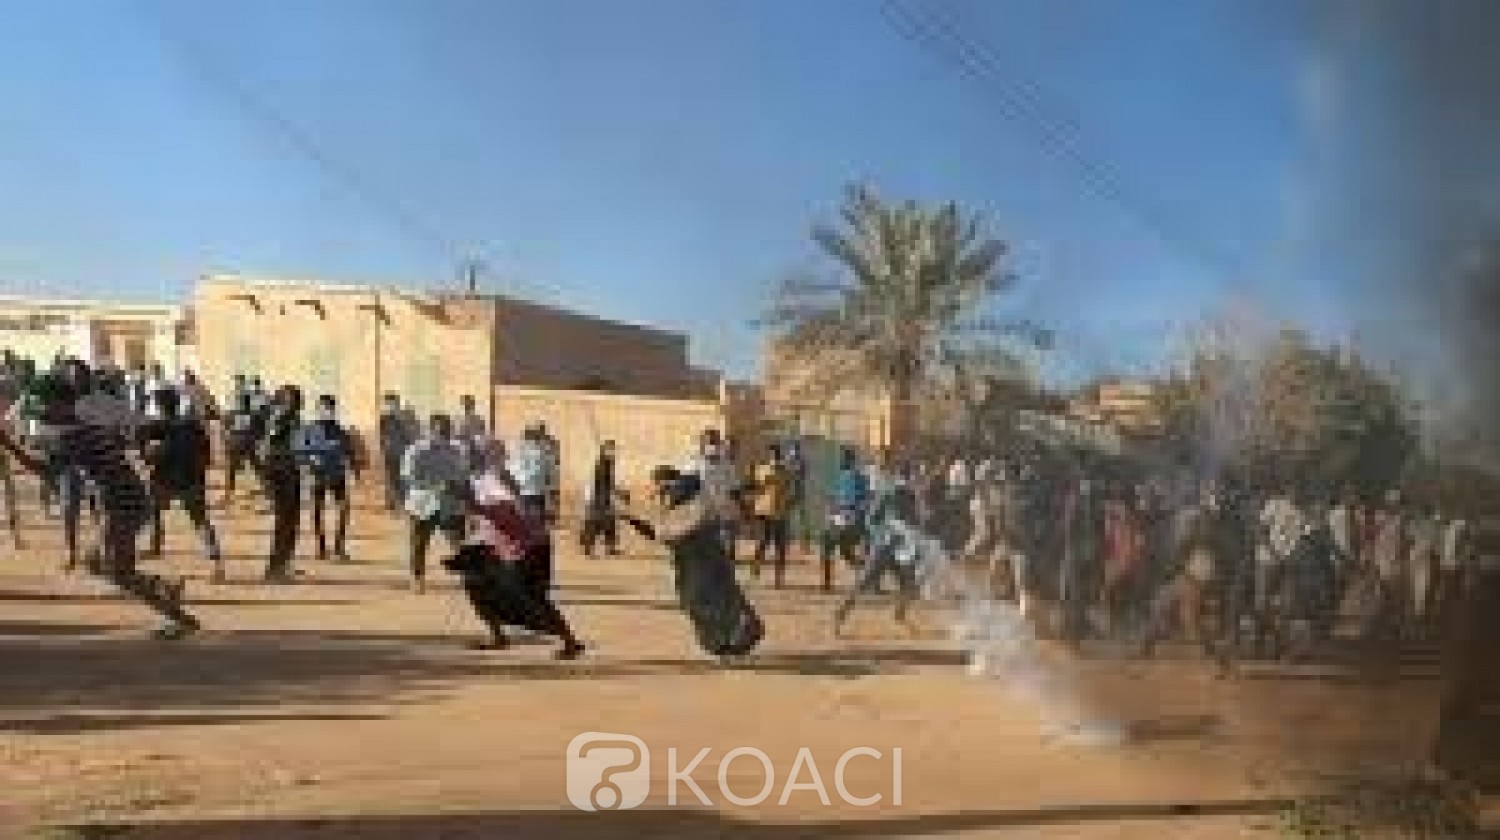 Soudan : Deux tribus rivales s'entretuent au Darfour,le bilan passe à 83 morts en 48 h